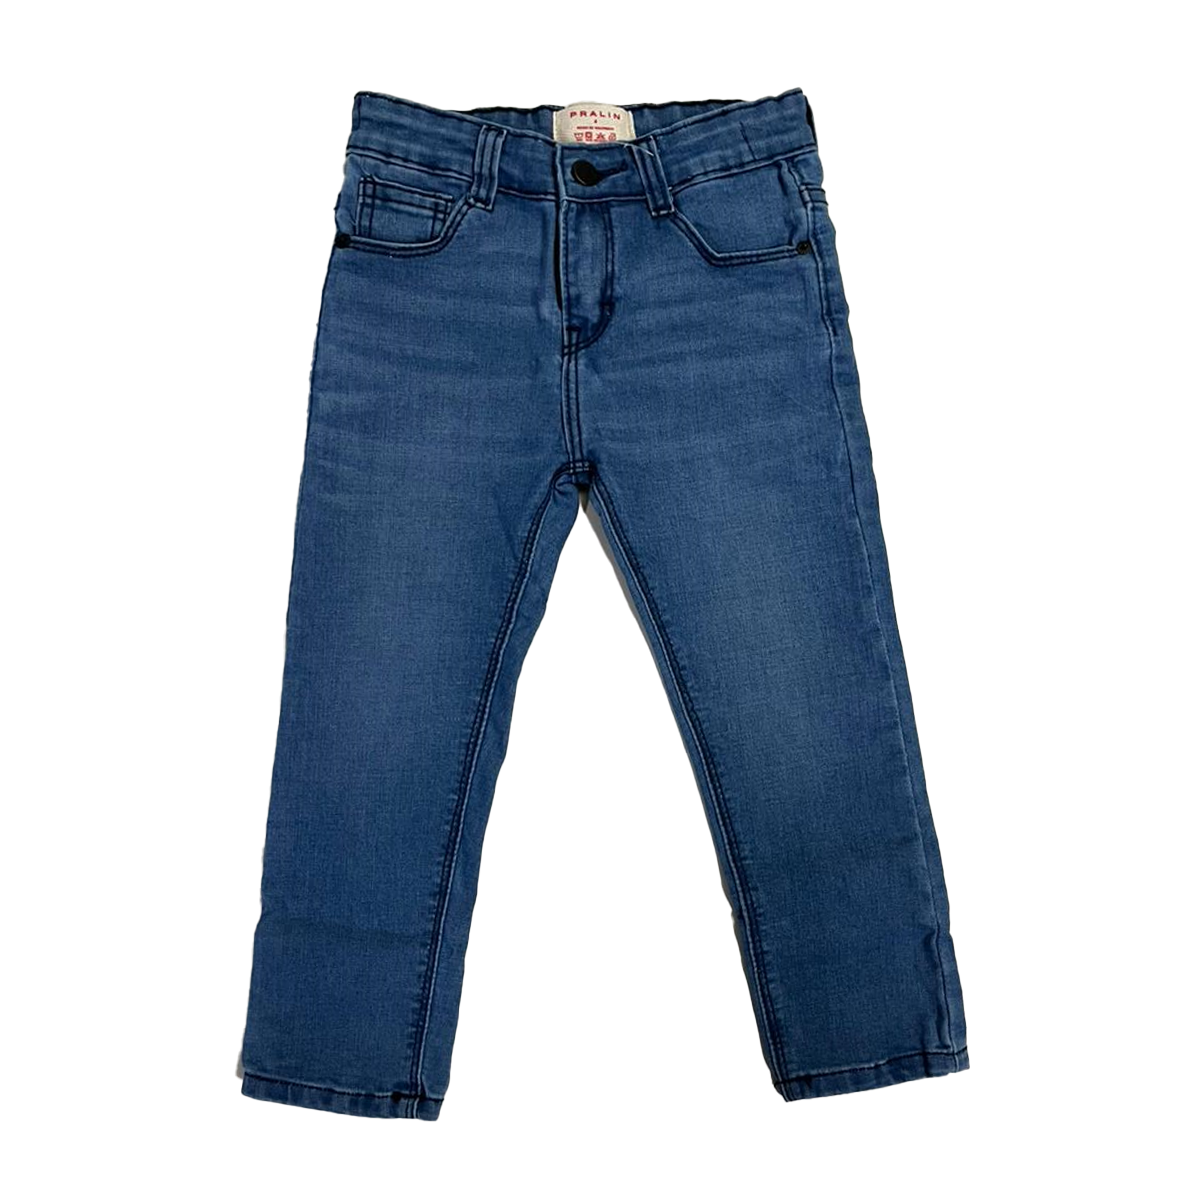 Jeans Azul Claro Estilo Slim 10075 Unisex Niños